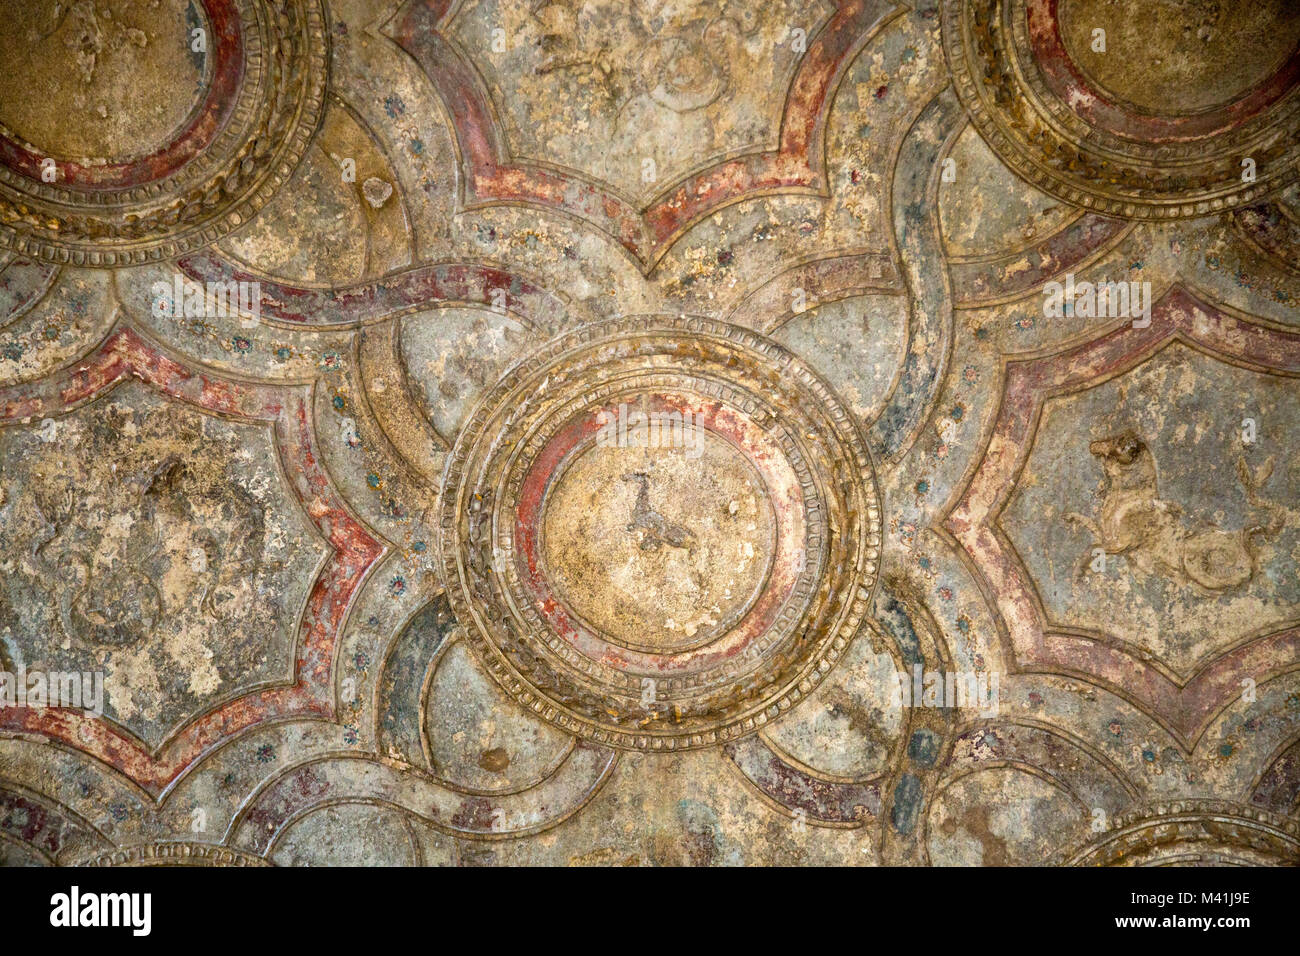 Un eccellente esempio di ben conservati dipinti sul soffitto del Stabian Bagni, situato nella storica e famosa cit di Pompei, Italia. Foto Stock